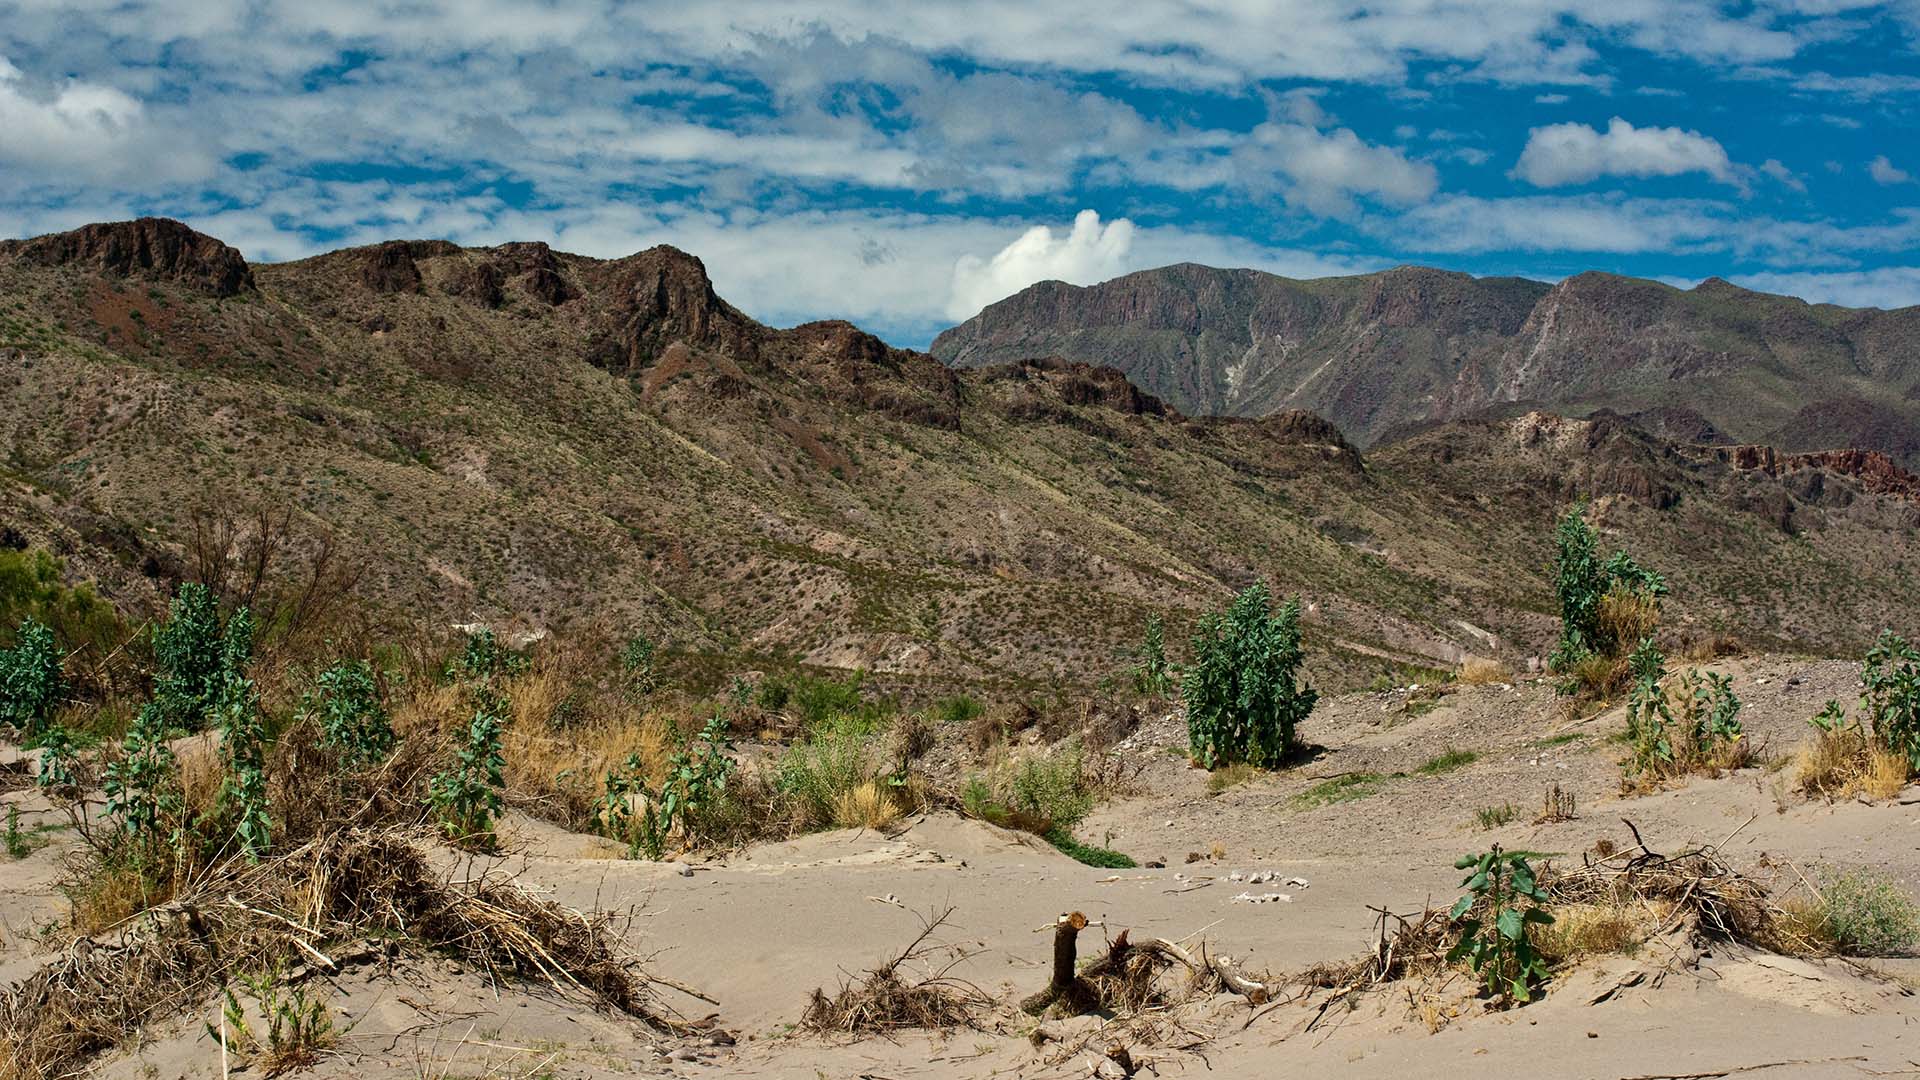 10 самых больших пустынь в мире